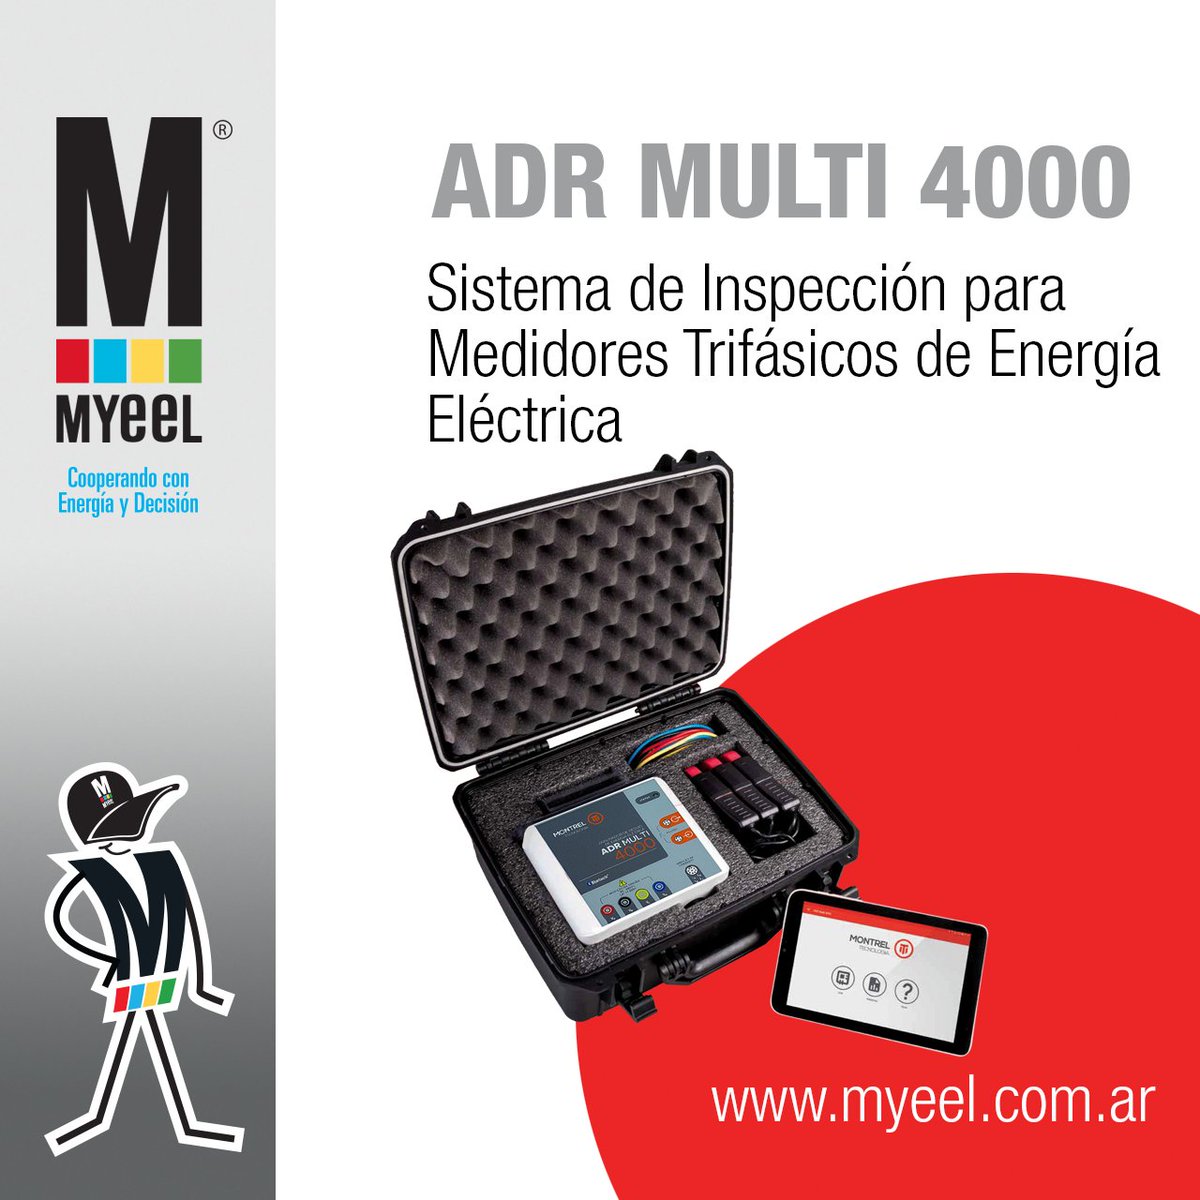 ⚡️ ADR MULTI 4000 ⚡️

🔎 Para más información, visite nuestra web: myeel.com.ar/producto/ADR-M…

#ADR4000 #verificadordemedidores #energíaeléctrica #MYEEL